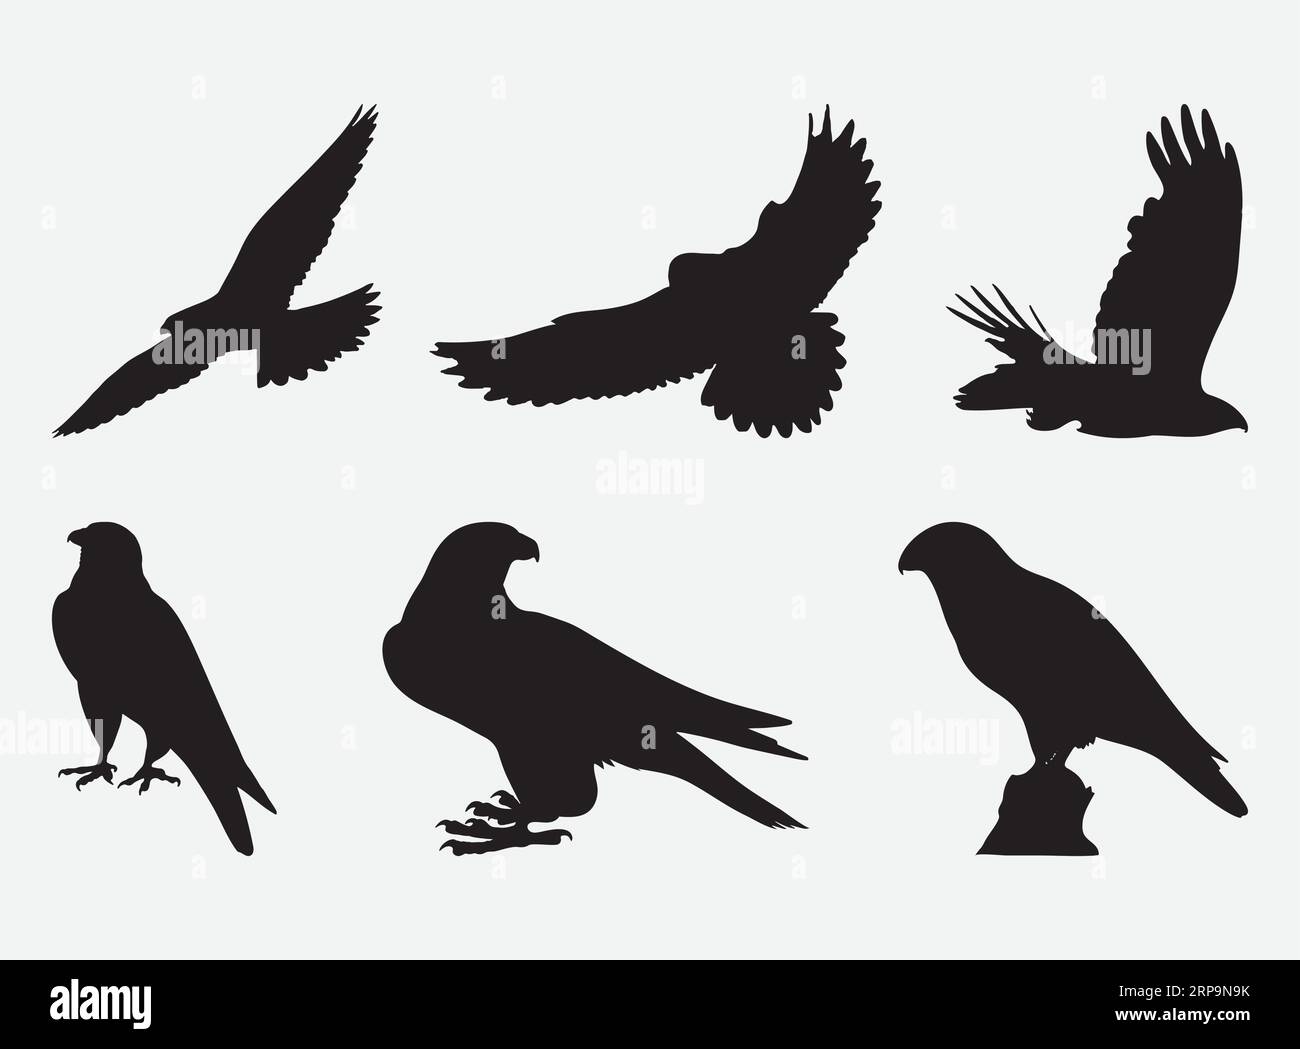 Elegant Falcon Silhouettes, Majestic Birds of Prey in Artful Shadows - Vector Set Stock Vector